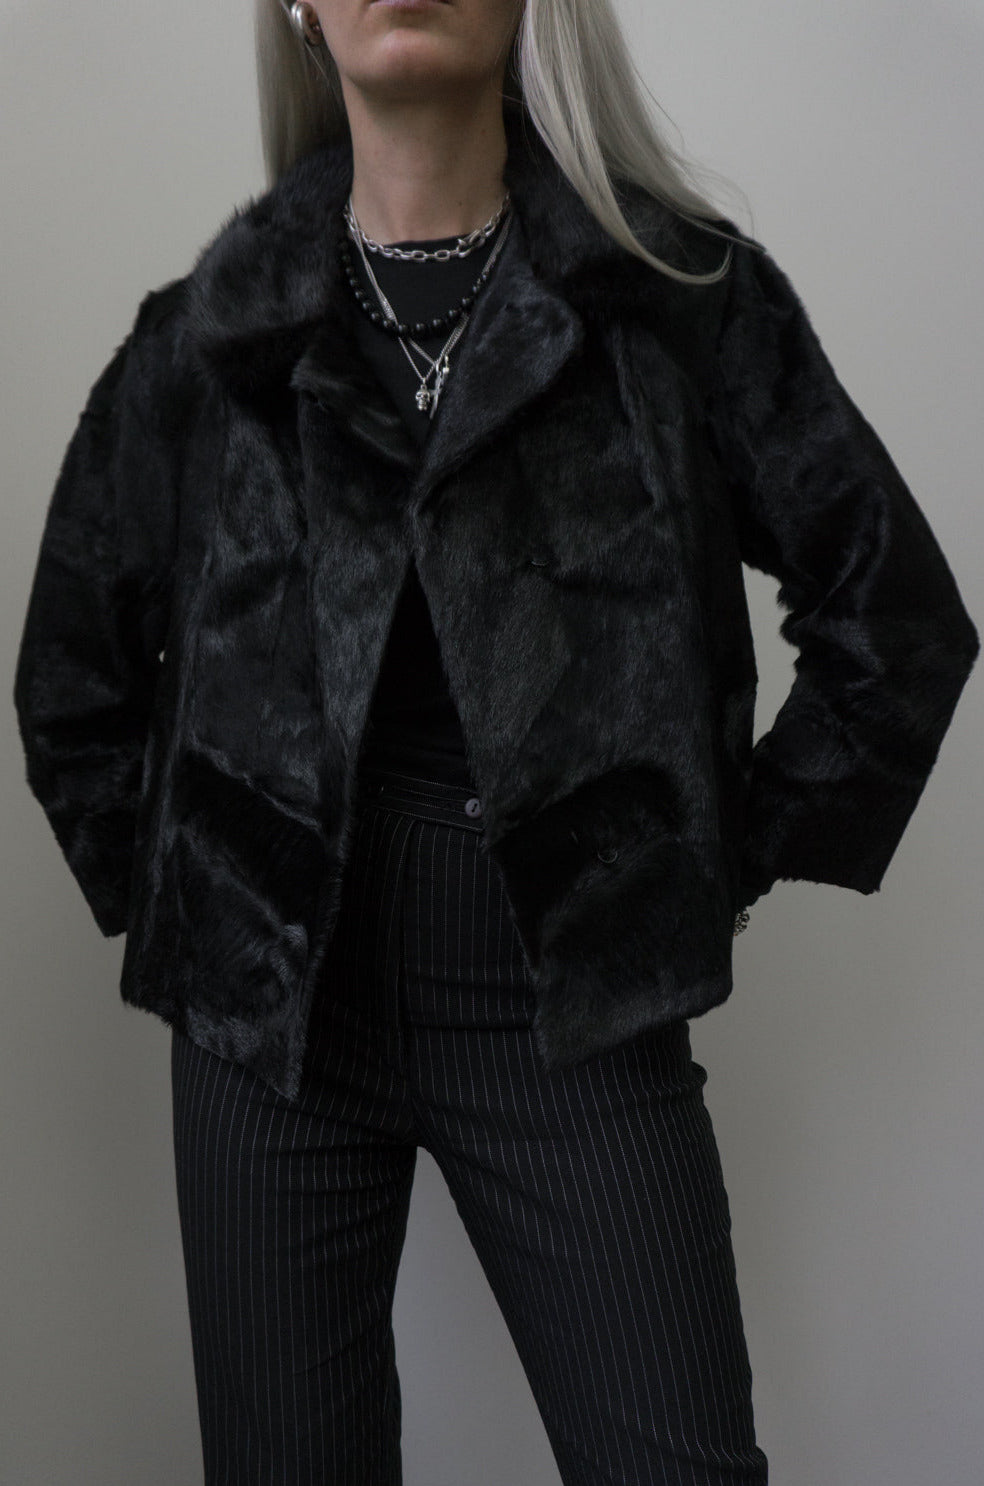 Fur jacket, black, XS–S